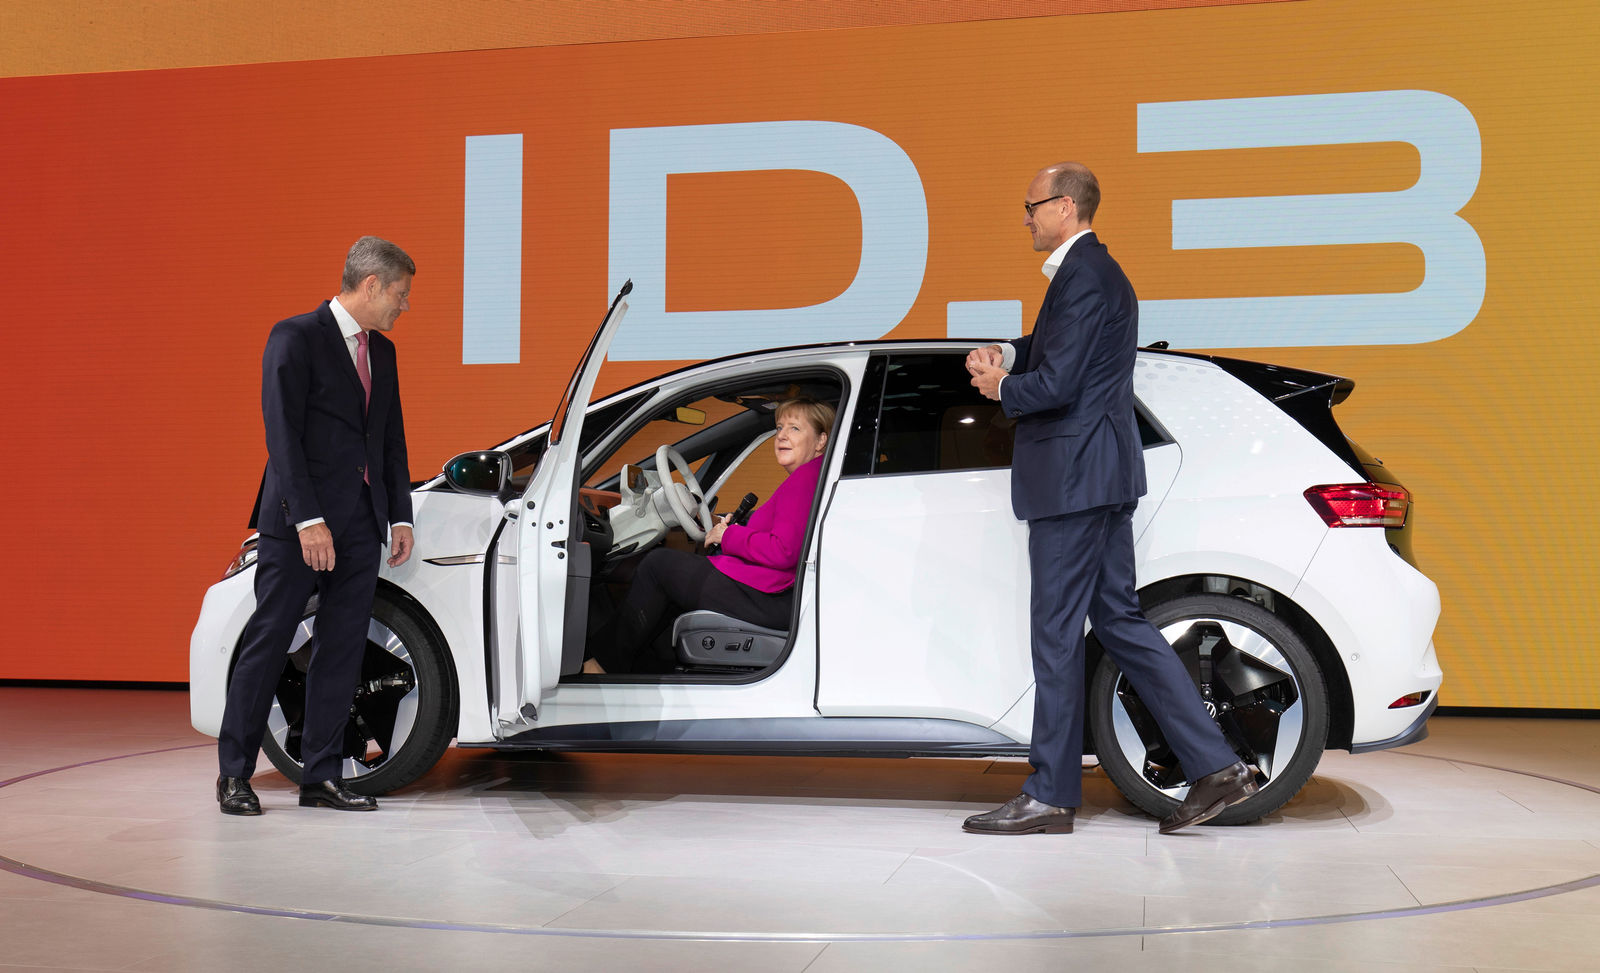 Chancellor Merkel visits Volkswagen at the IAA